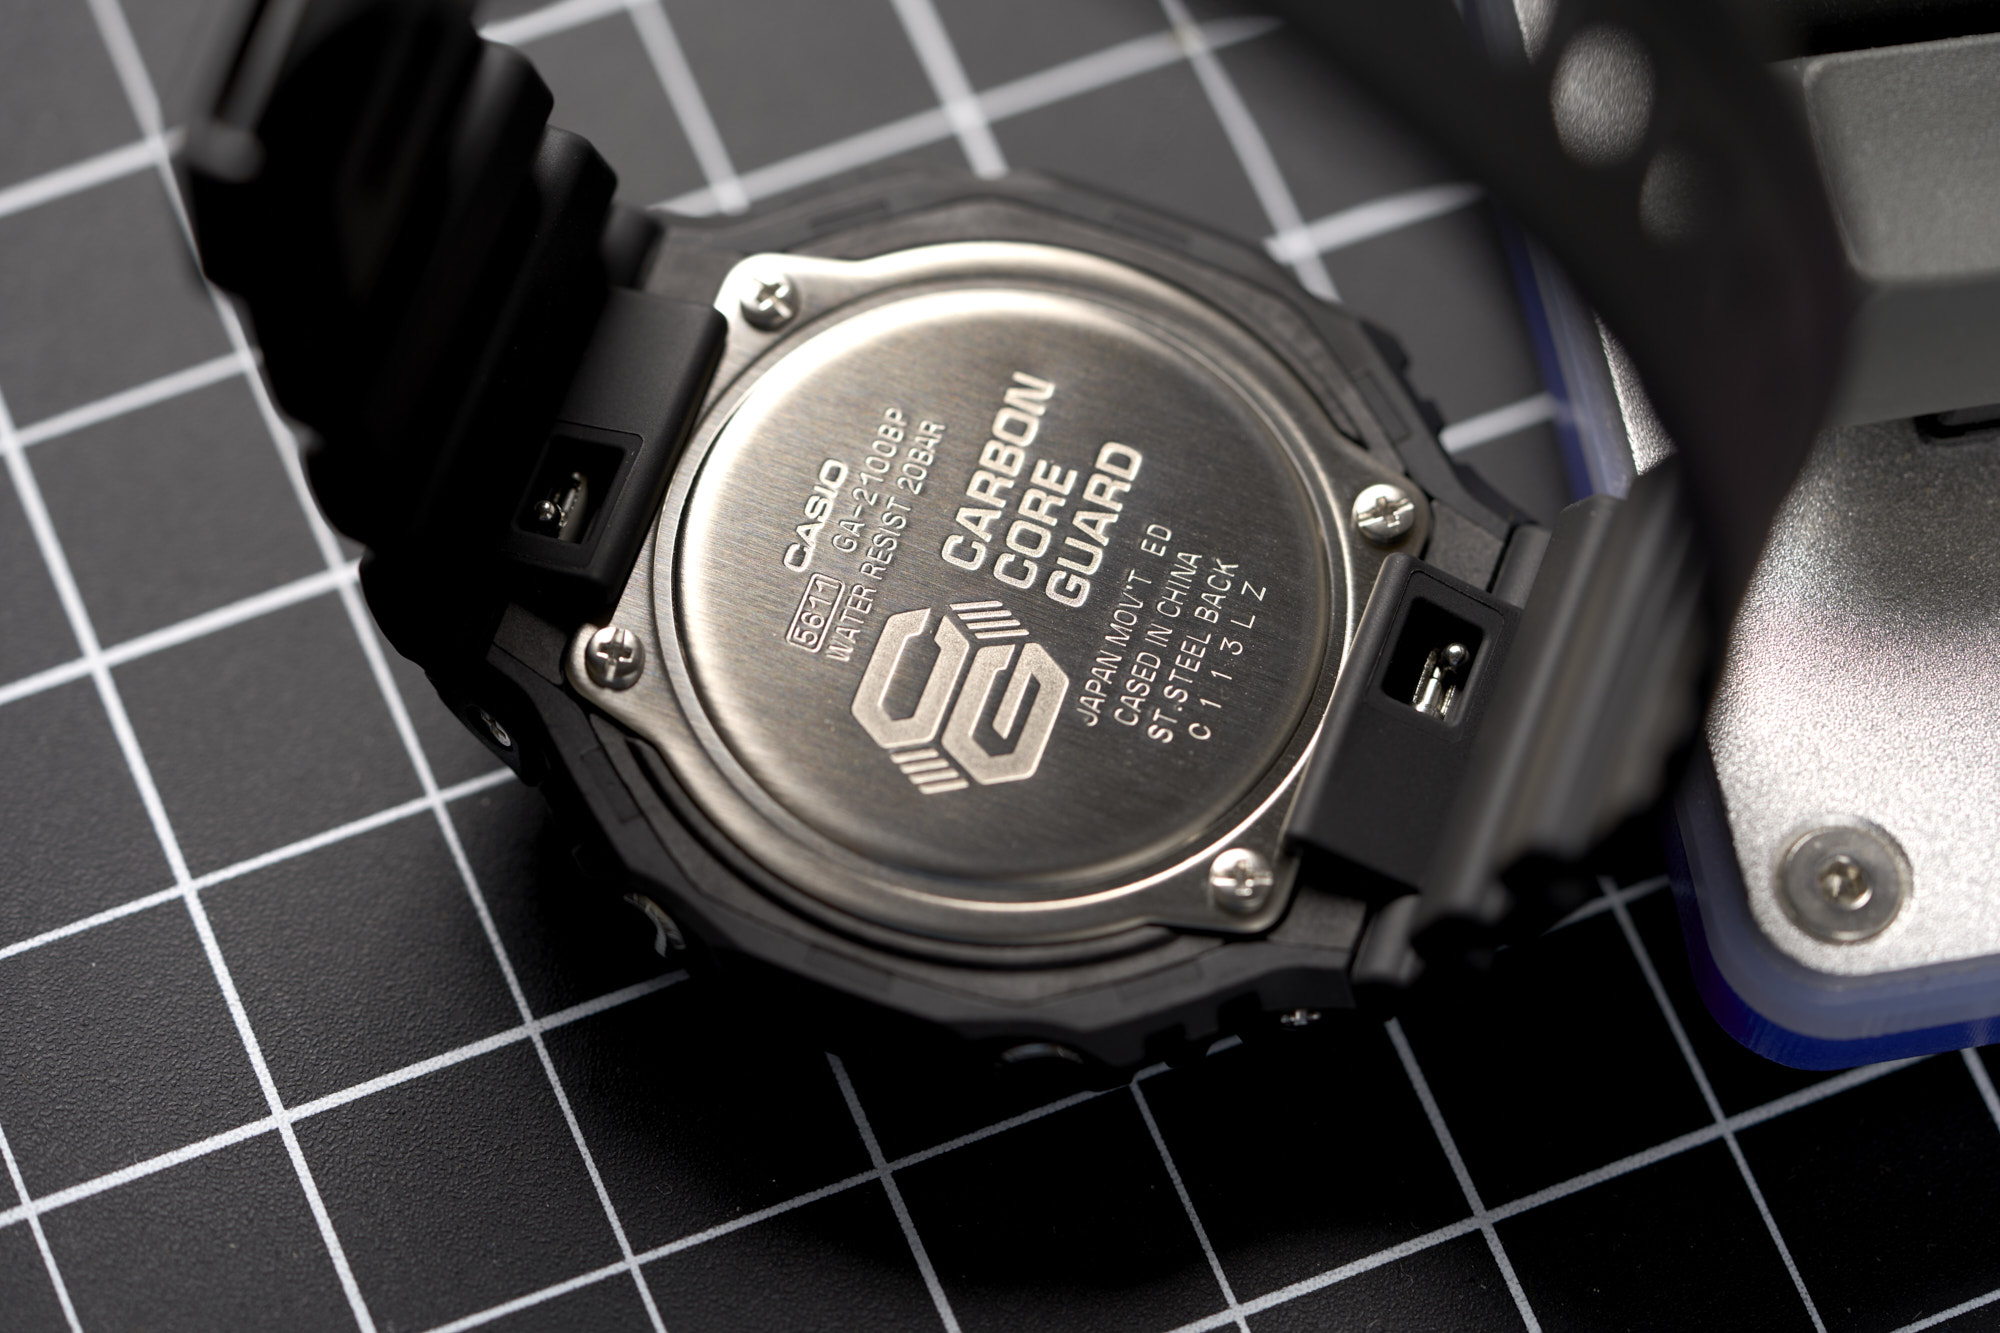 G-SHOCK GA2100 Watch - Windup Watch Shop | Lightweight & Sleek Design